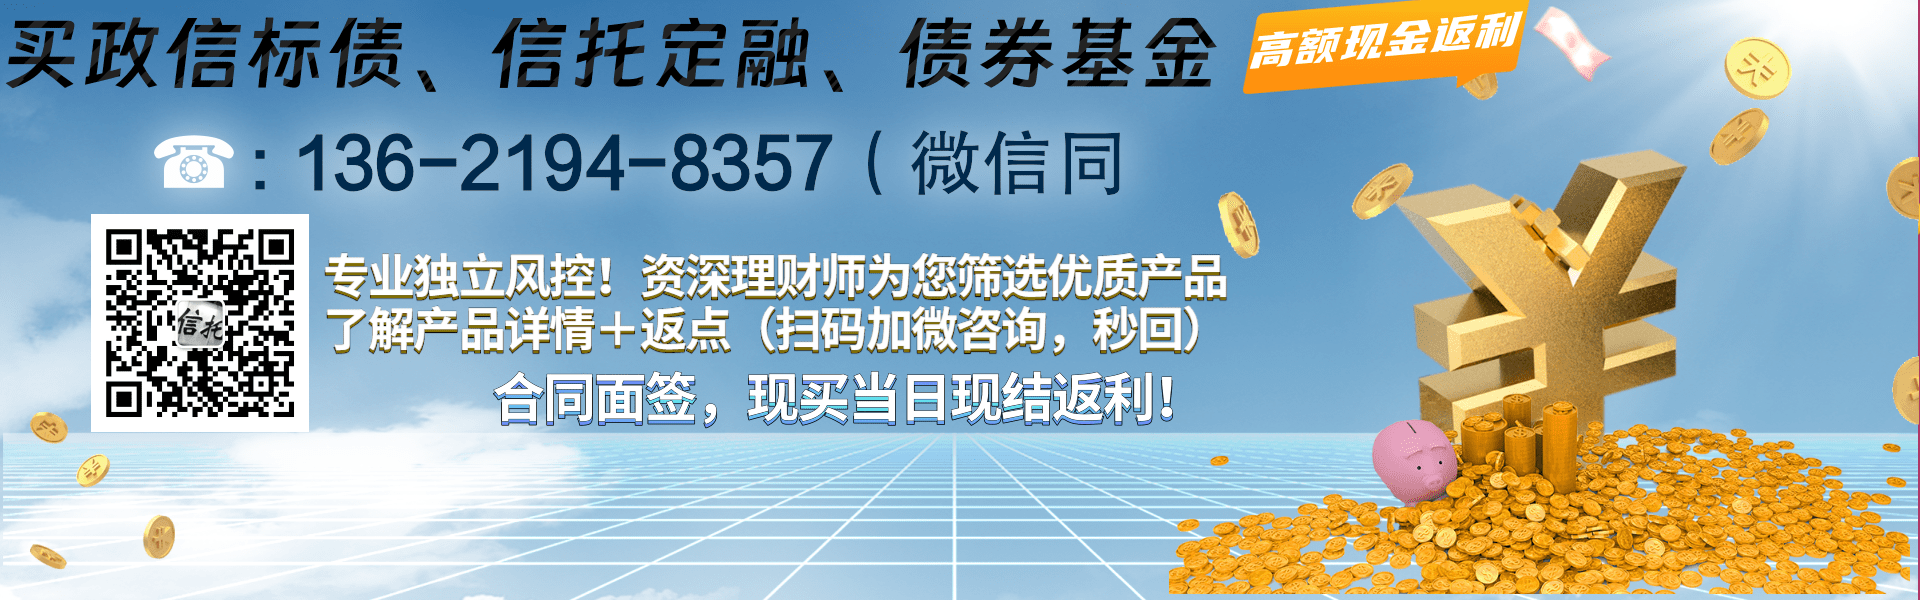 央企信托-61号徐州新沂非标集合资金信托计划